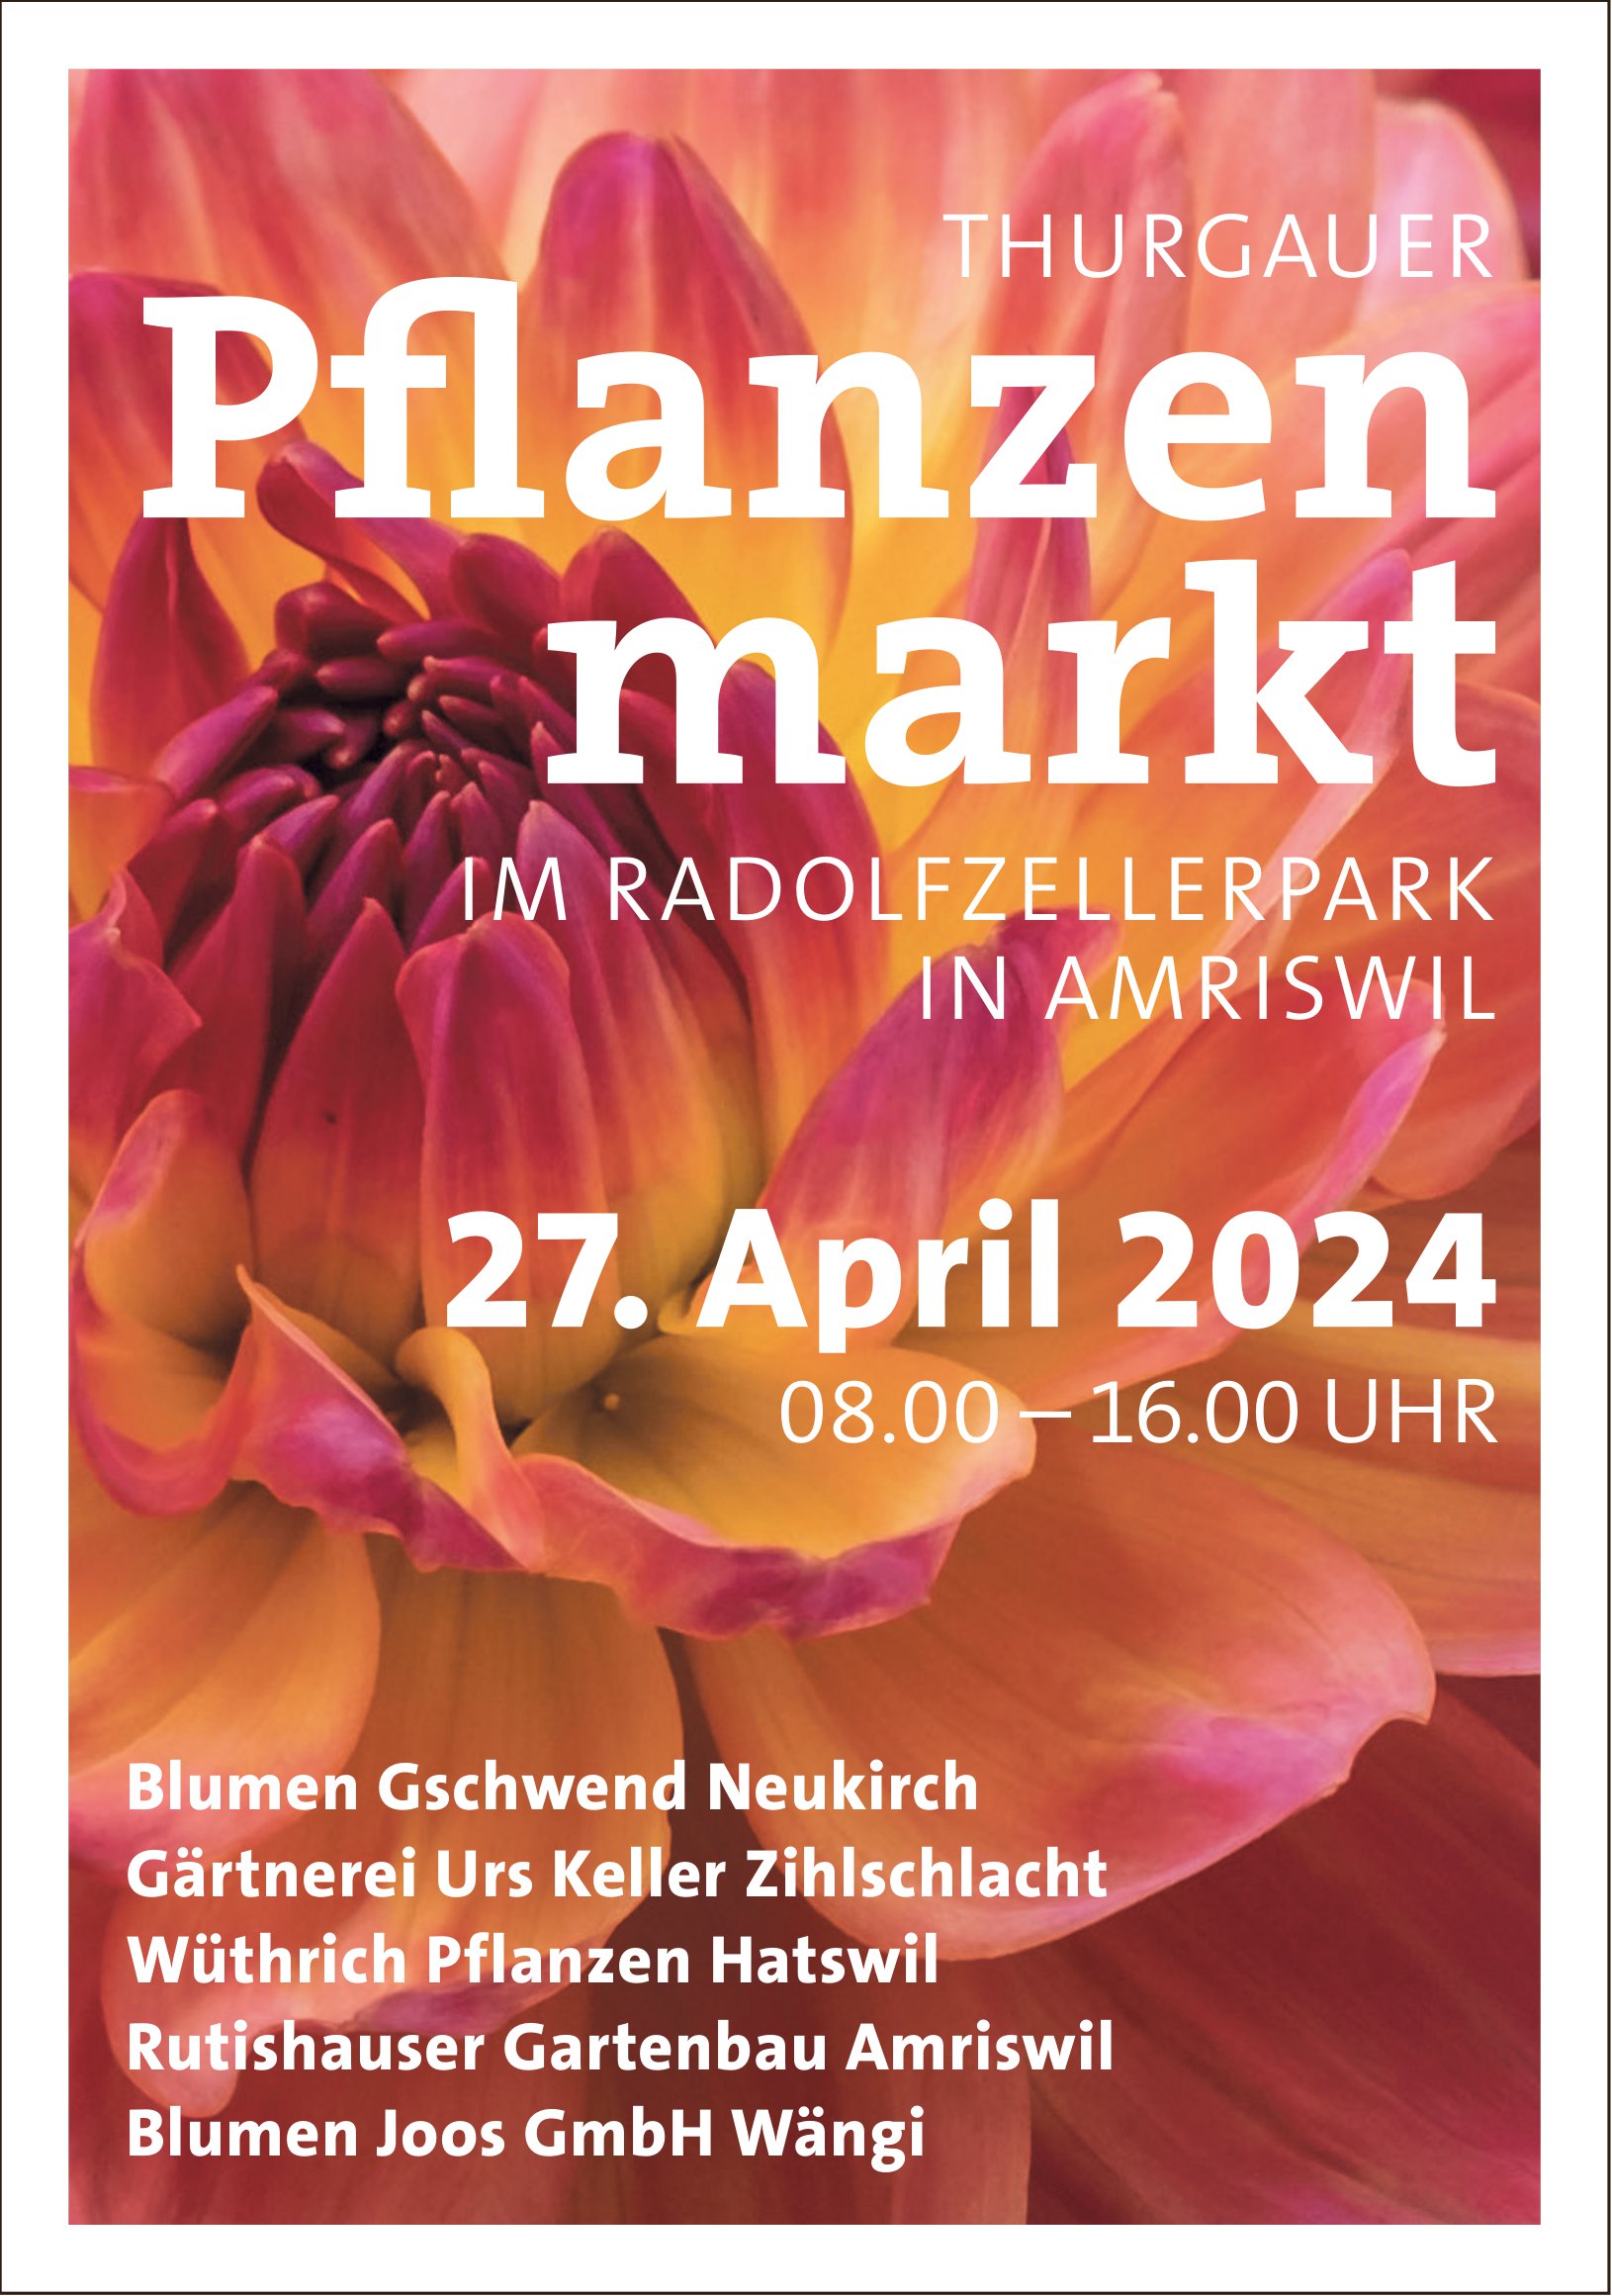 Thurgauer Pflanzen markt, 27. April, Amriswil